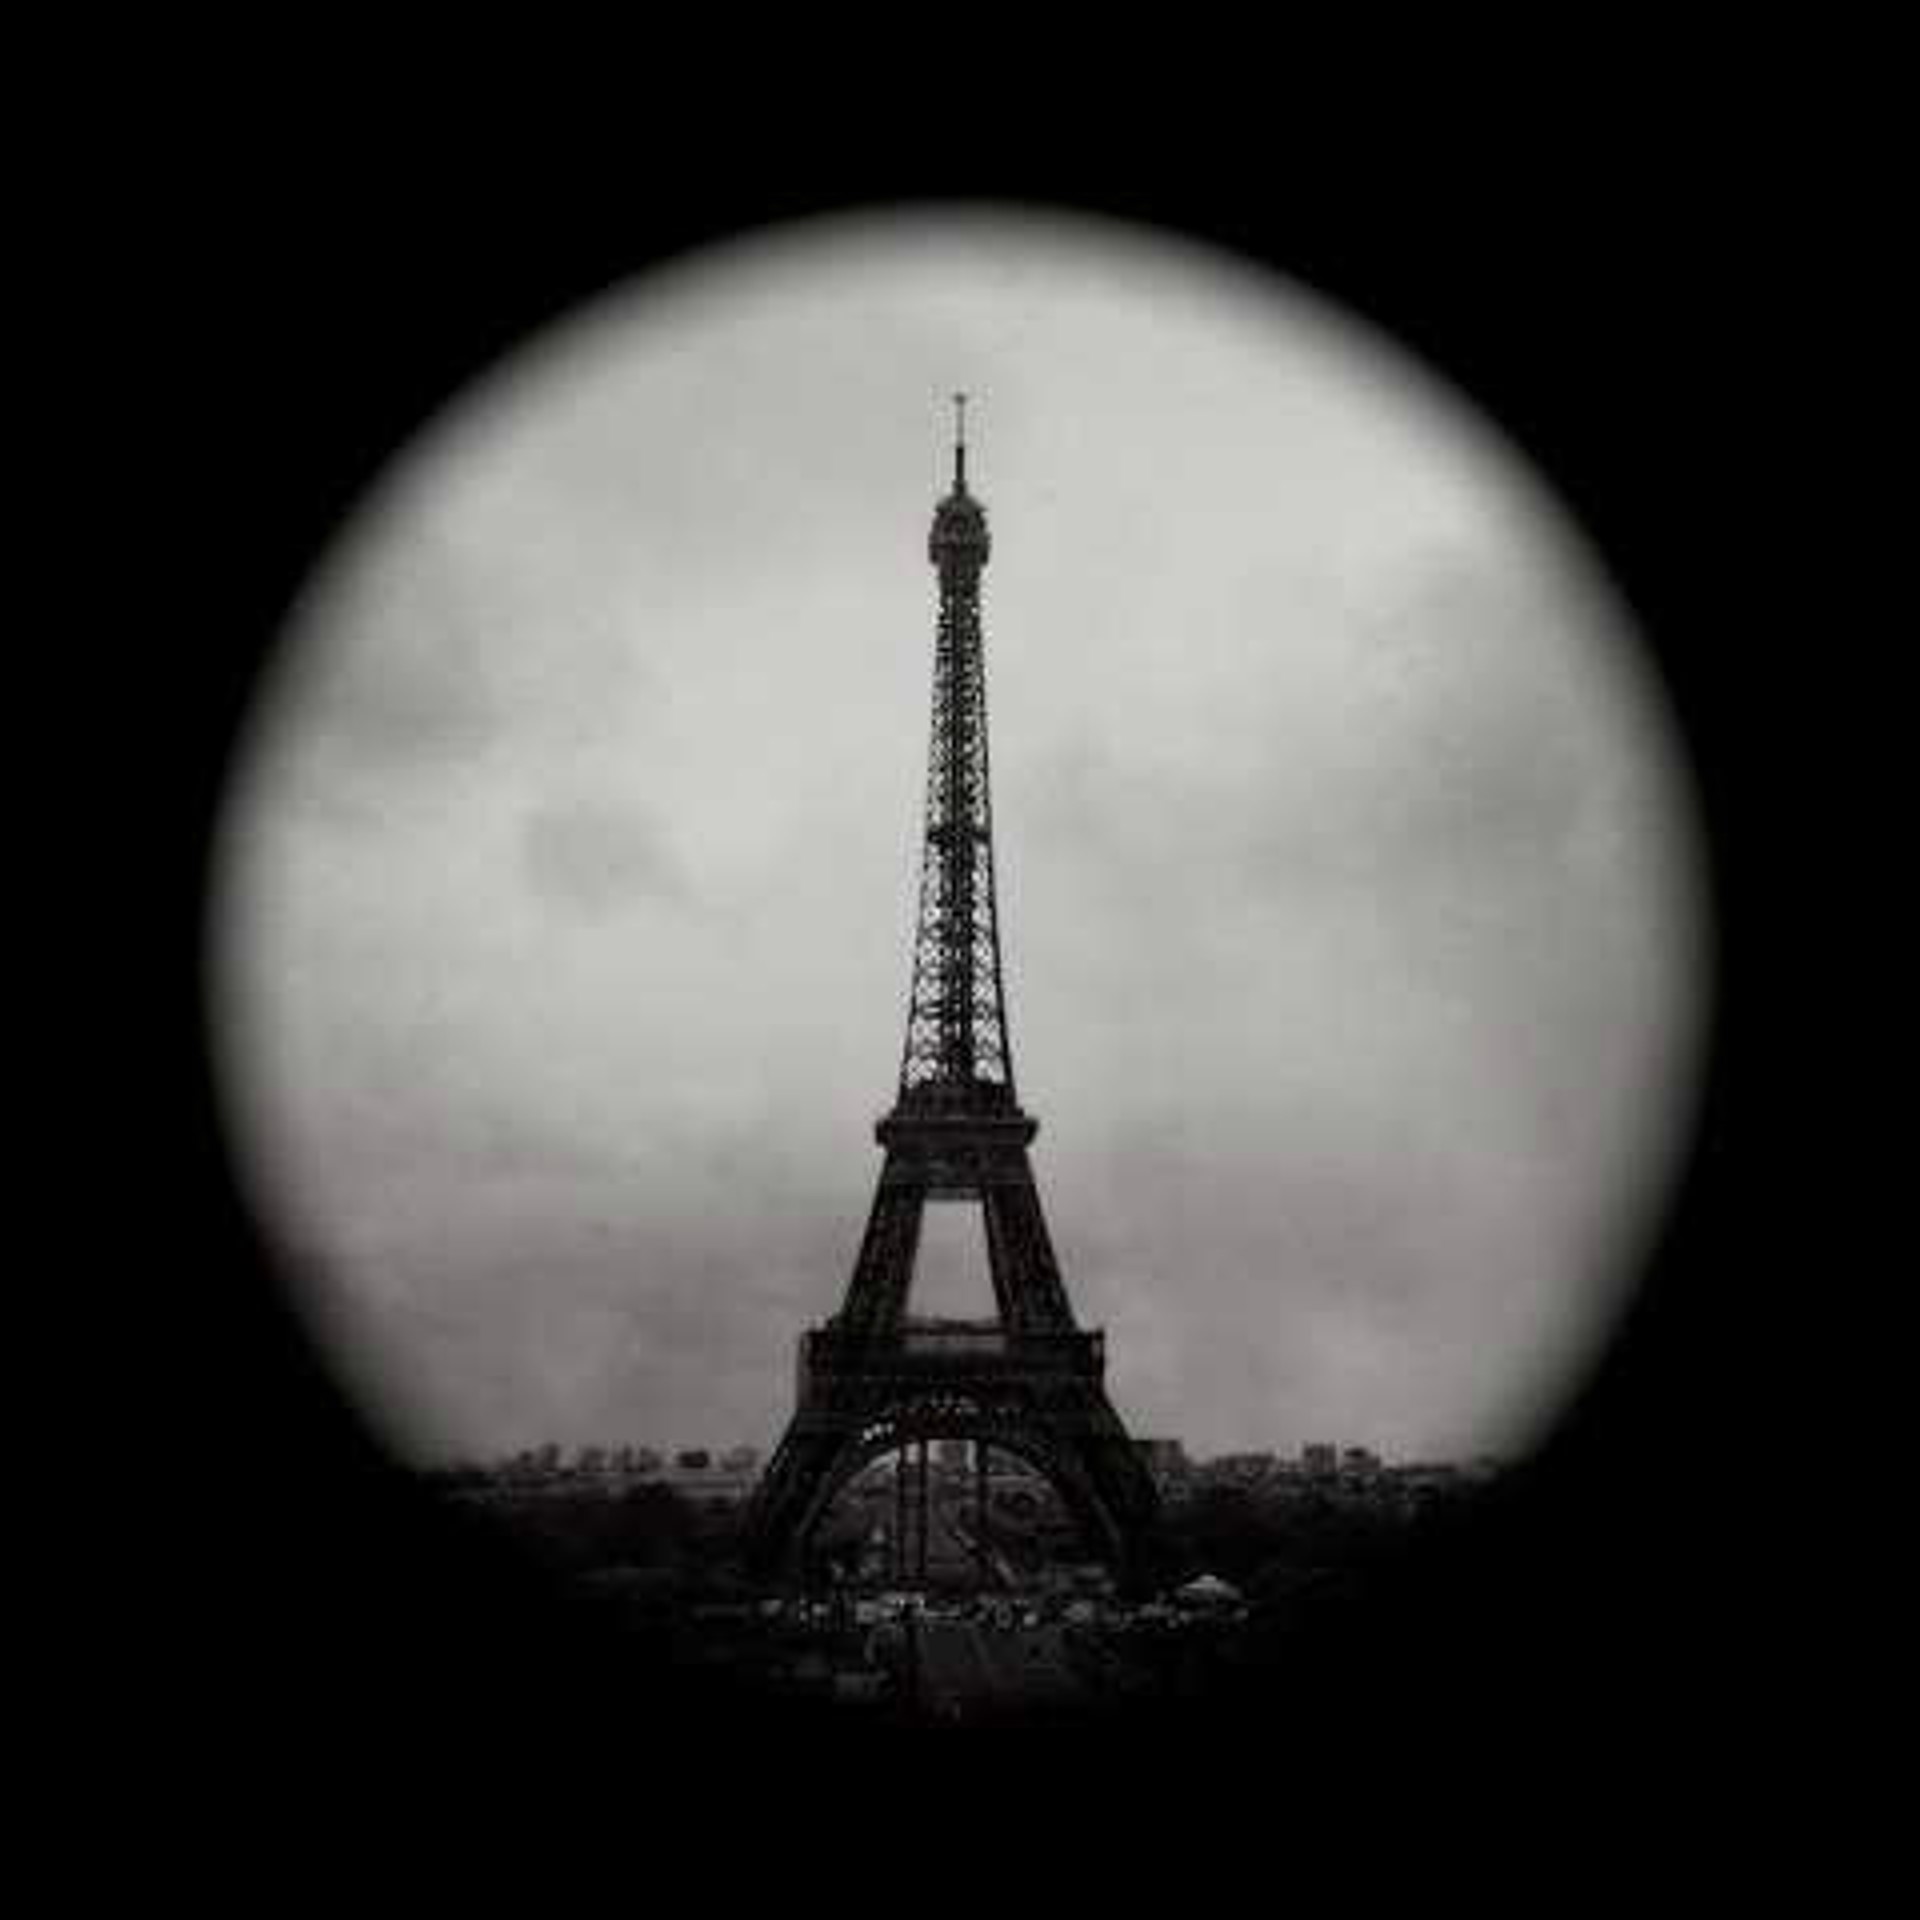 La Tour Eiffel by Wallace Merritt